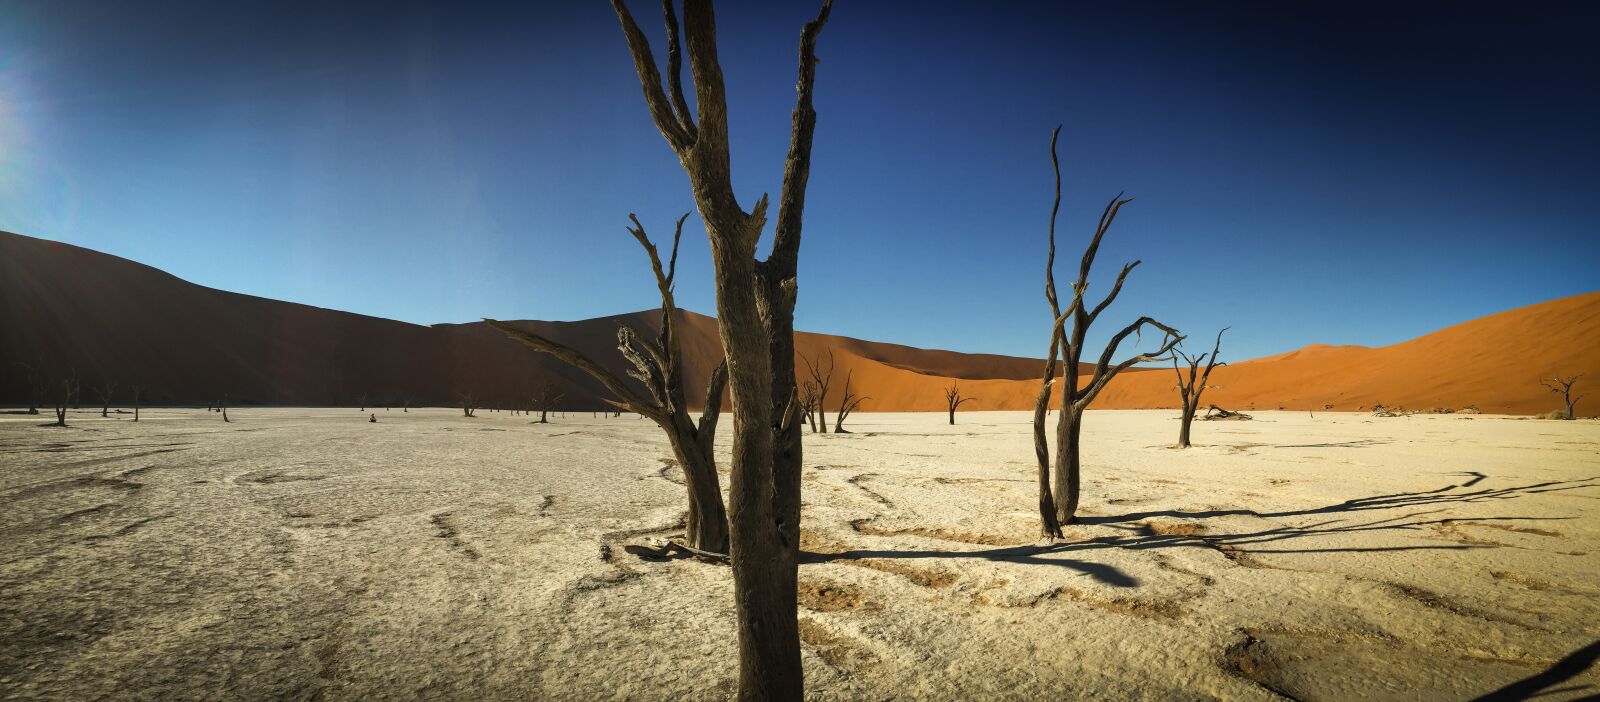 Apple iPhone 6 sample photo. Namibia, wildlife, africa photography